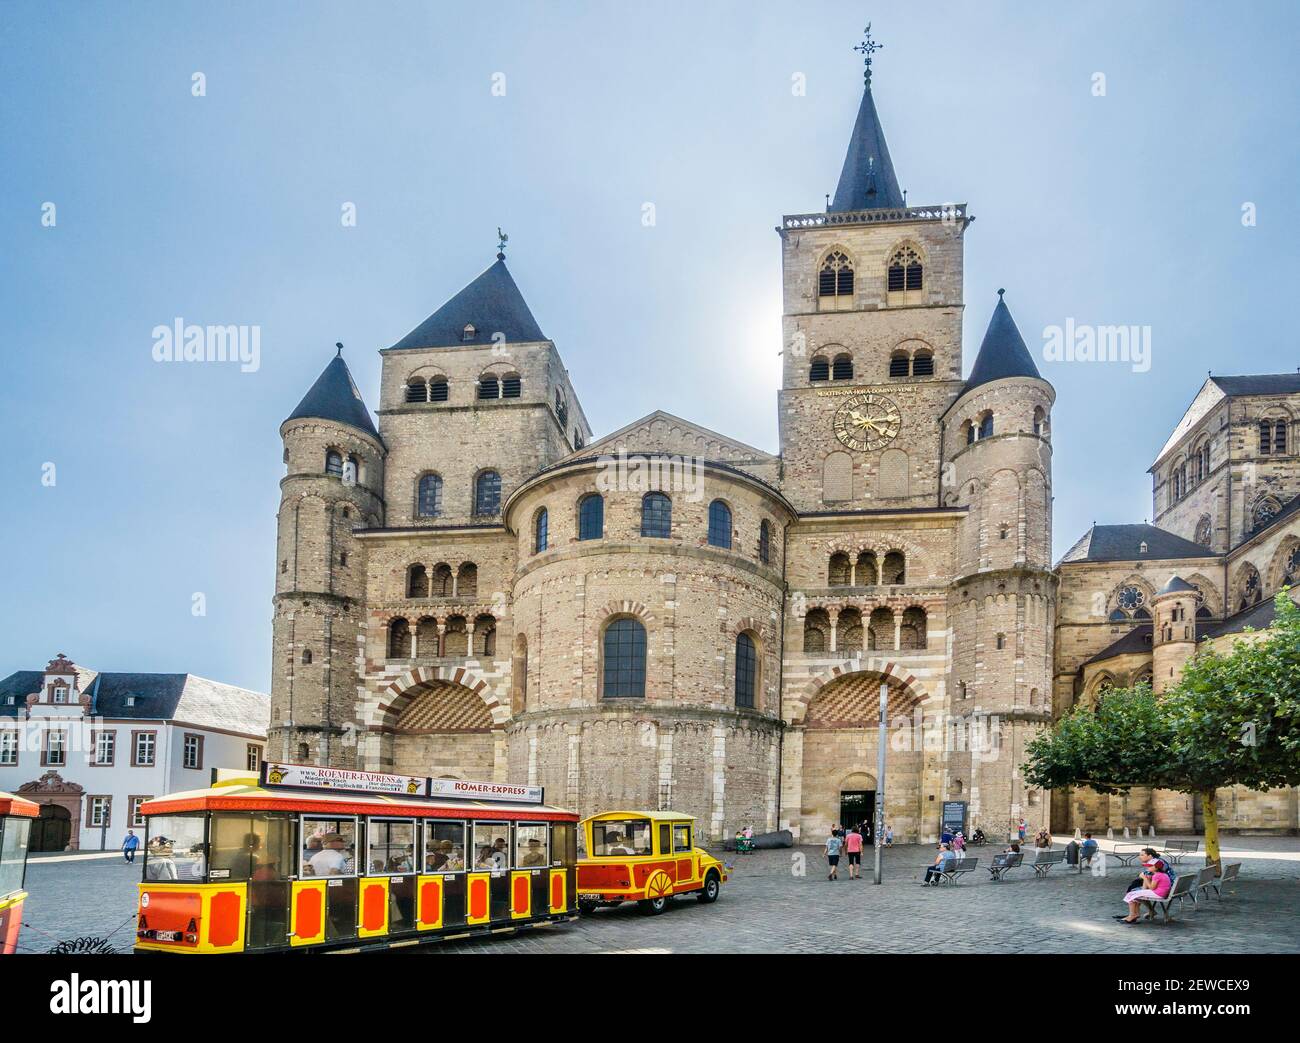 Train touristique à l'ouest de la cathédrale de Trèves avec ses quatre tours, Trèves, Rhénanie-Palatinat, Allemagne Banque D'Images